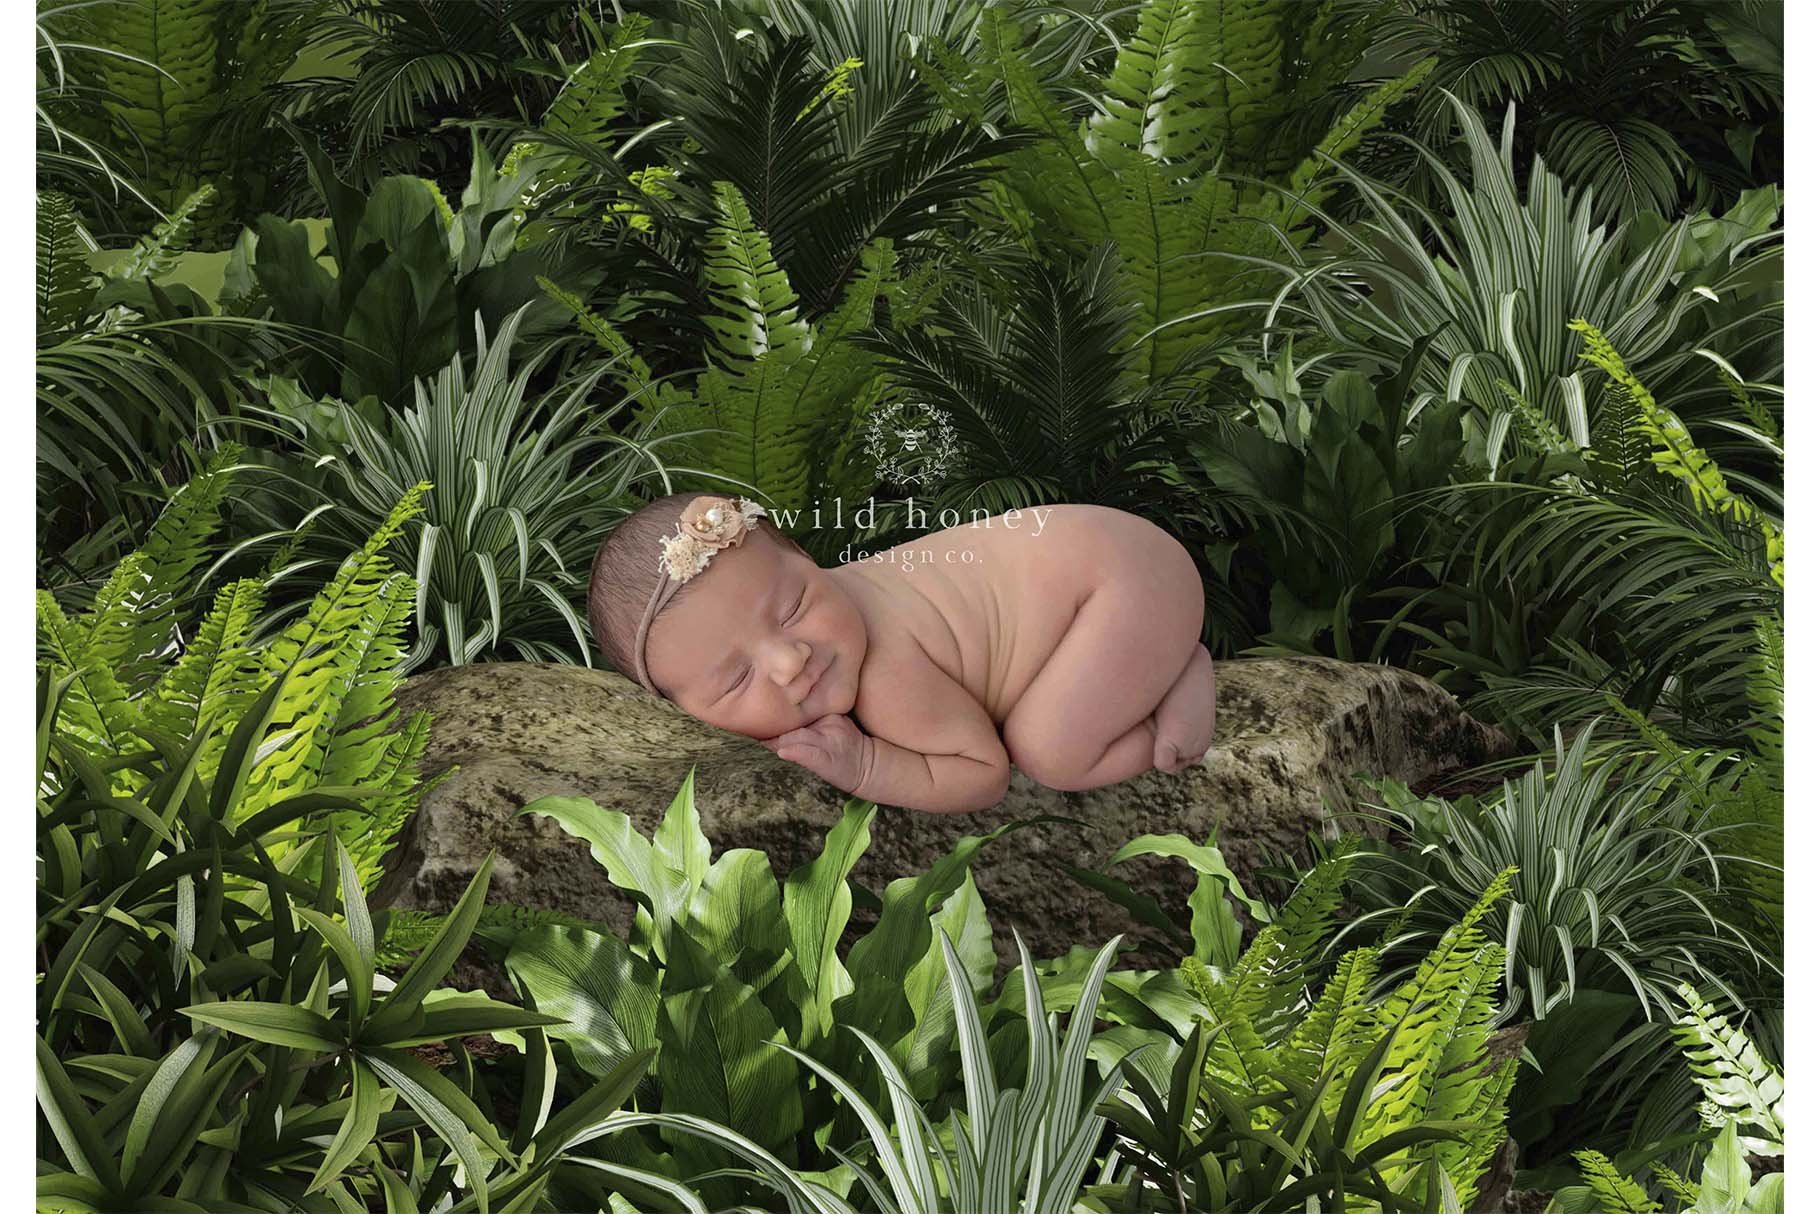 Woodland Baby Digital Backdropcover image.